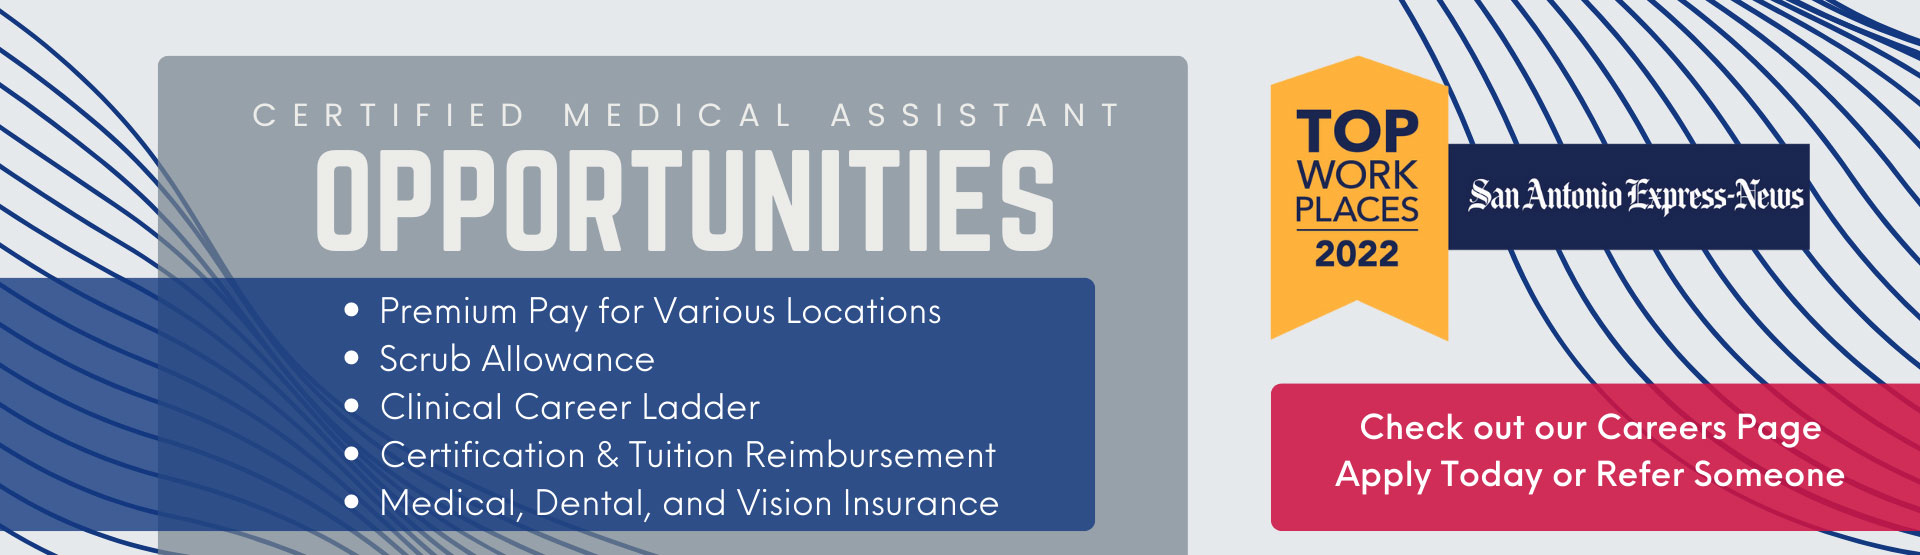 Job opportunities at HealthTexas web banner